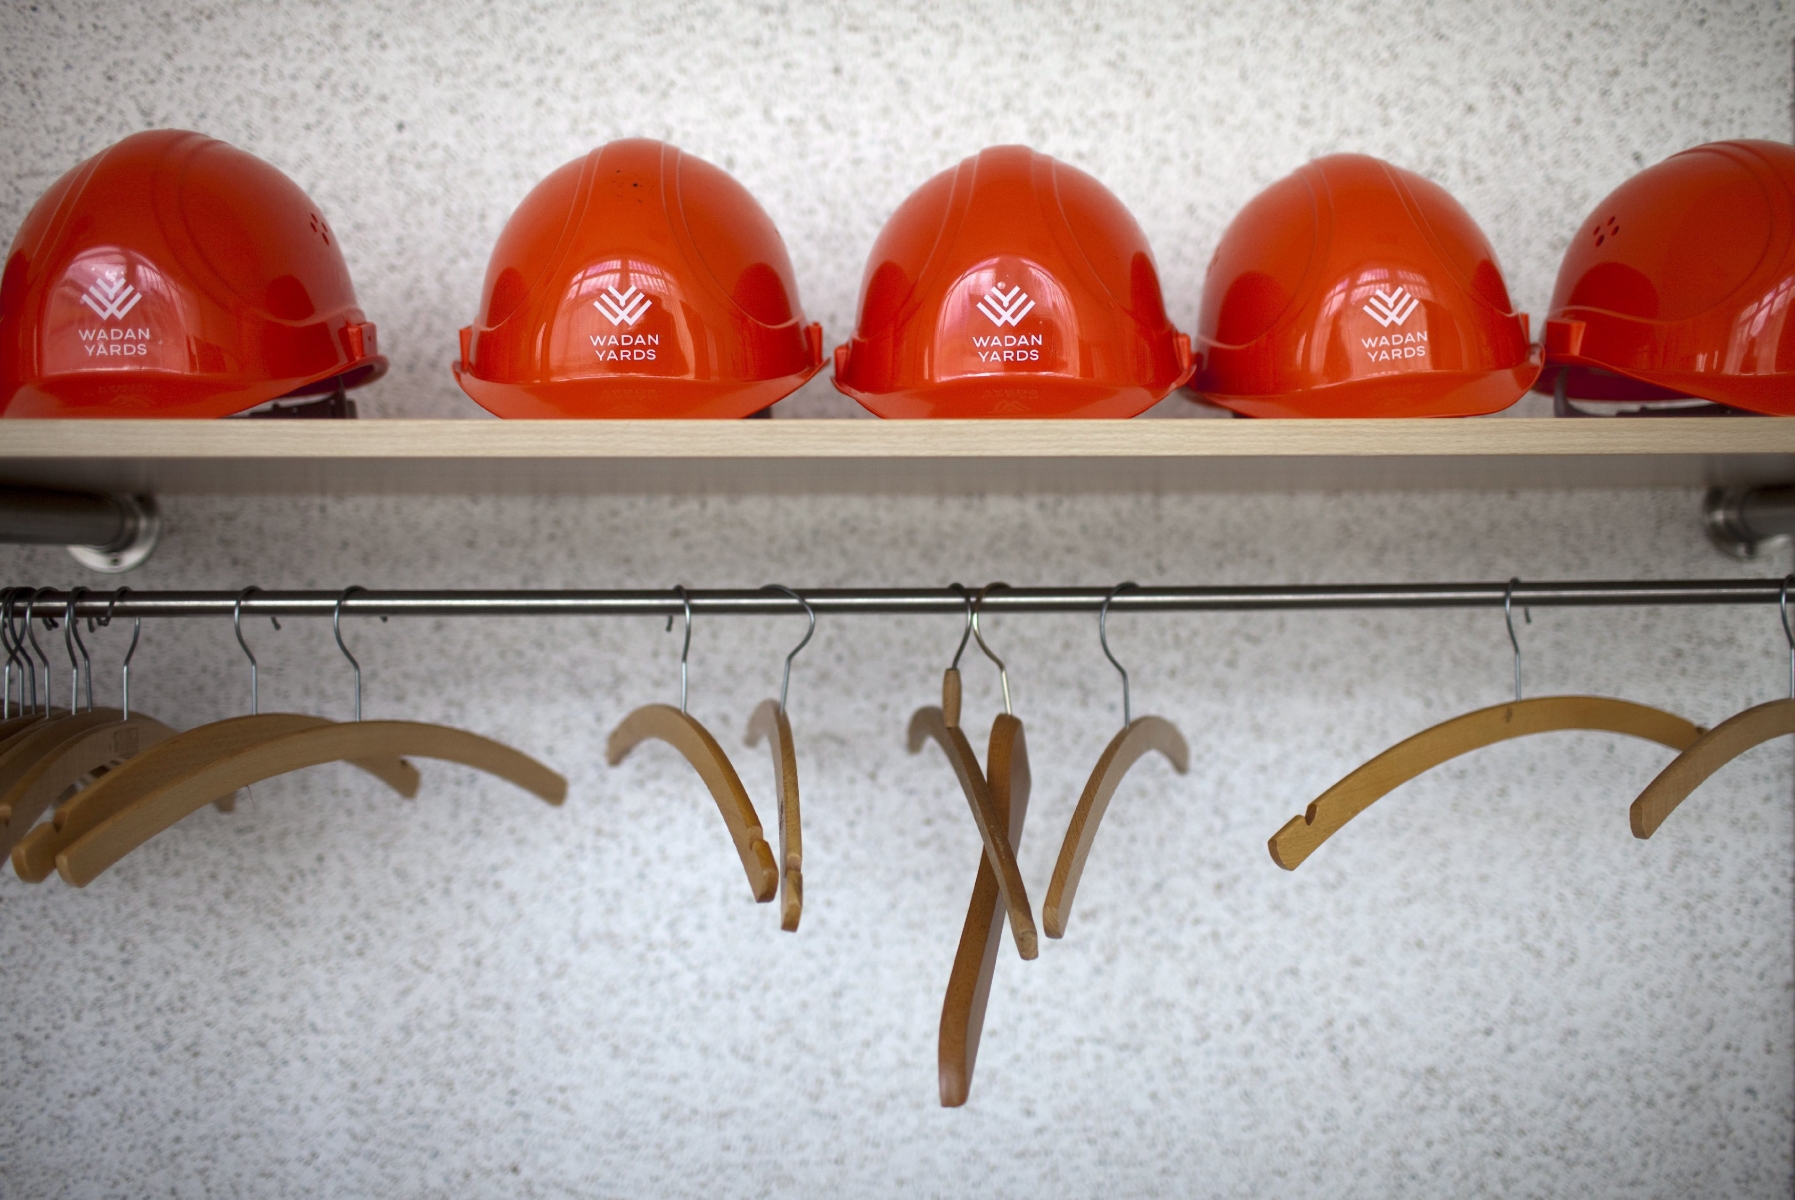 Le chômage progresse à la fin janvier 2016 en Valais. La construction davantage touchée.